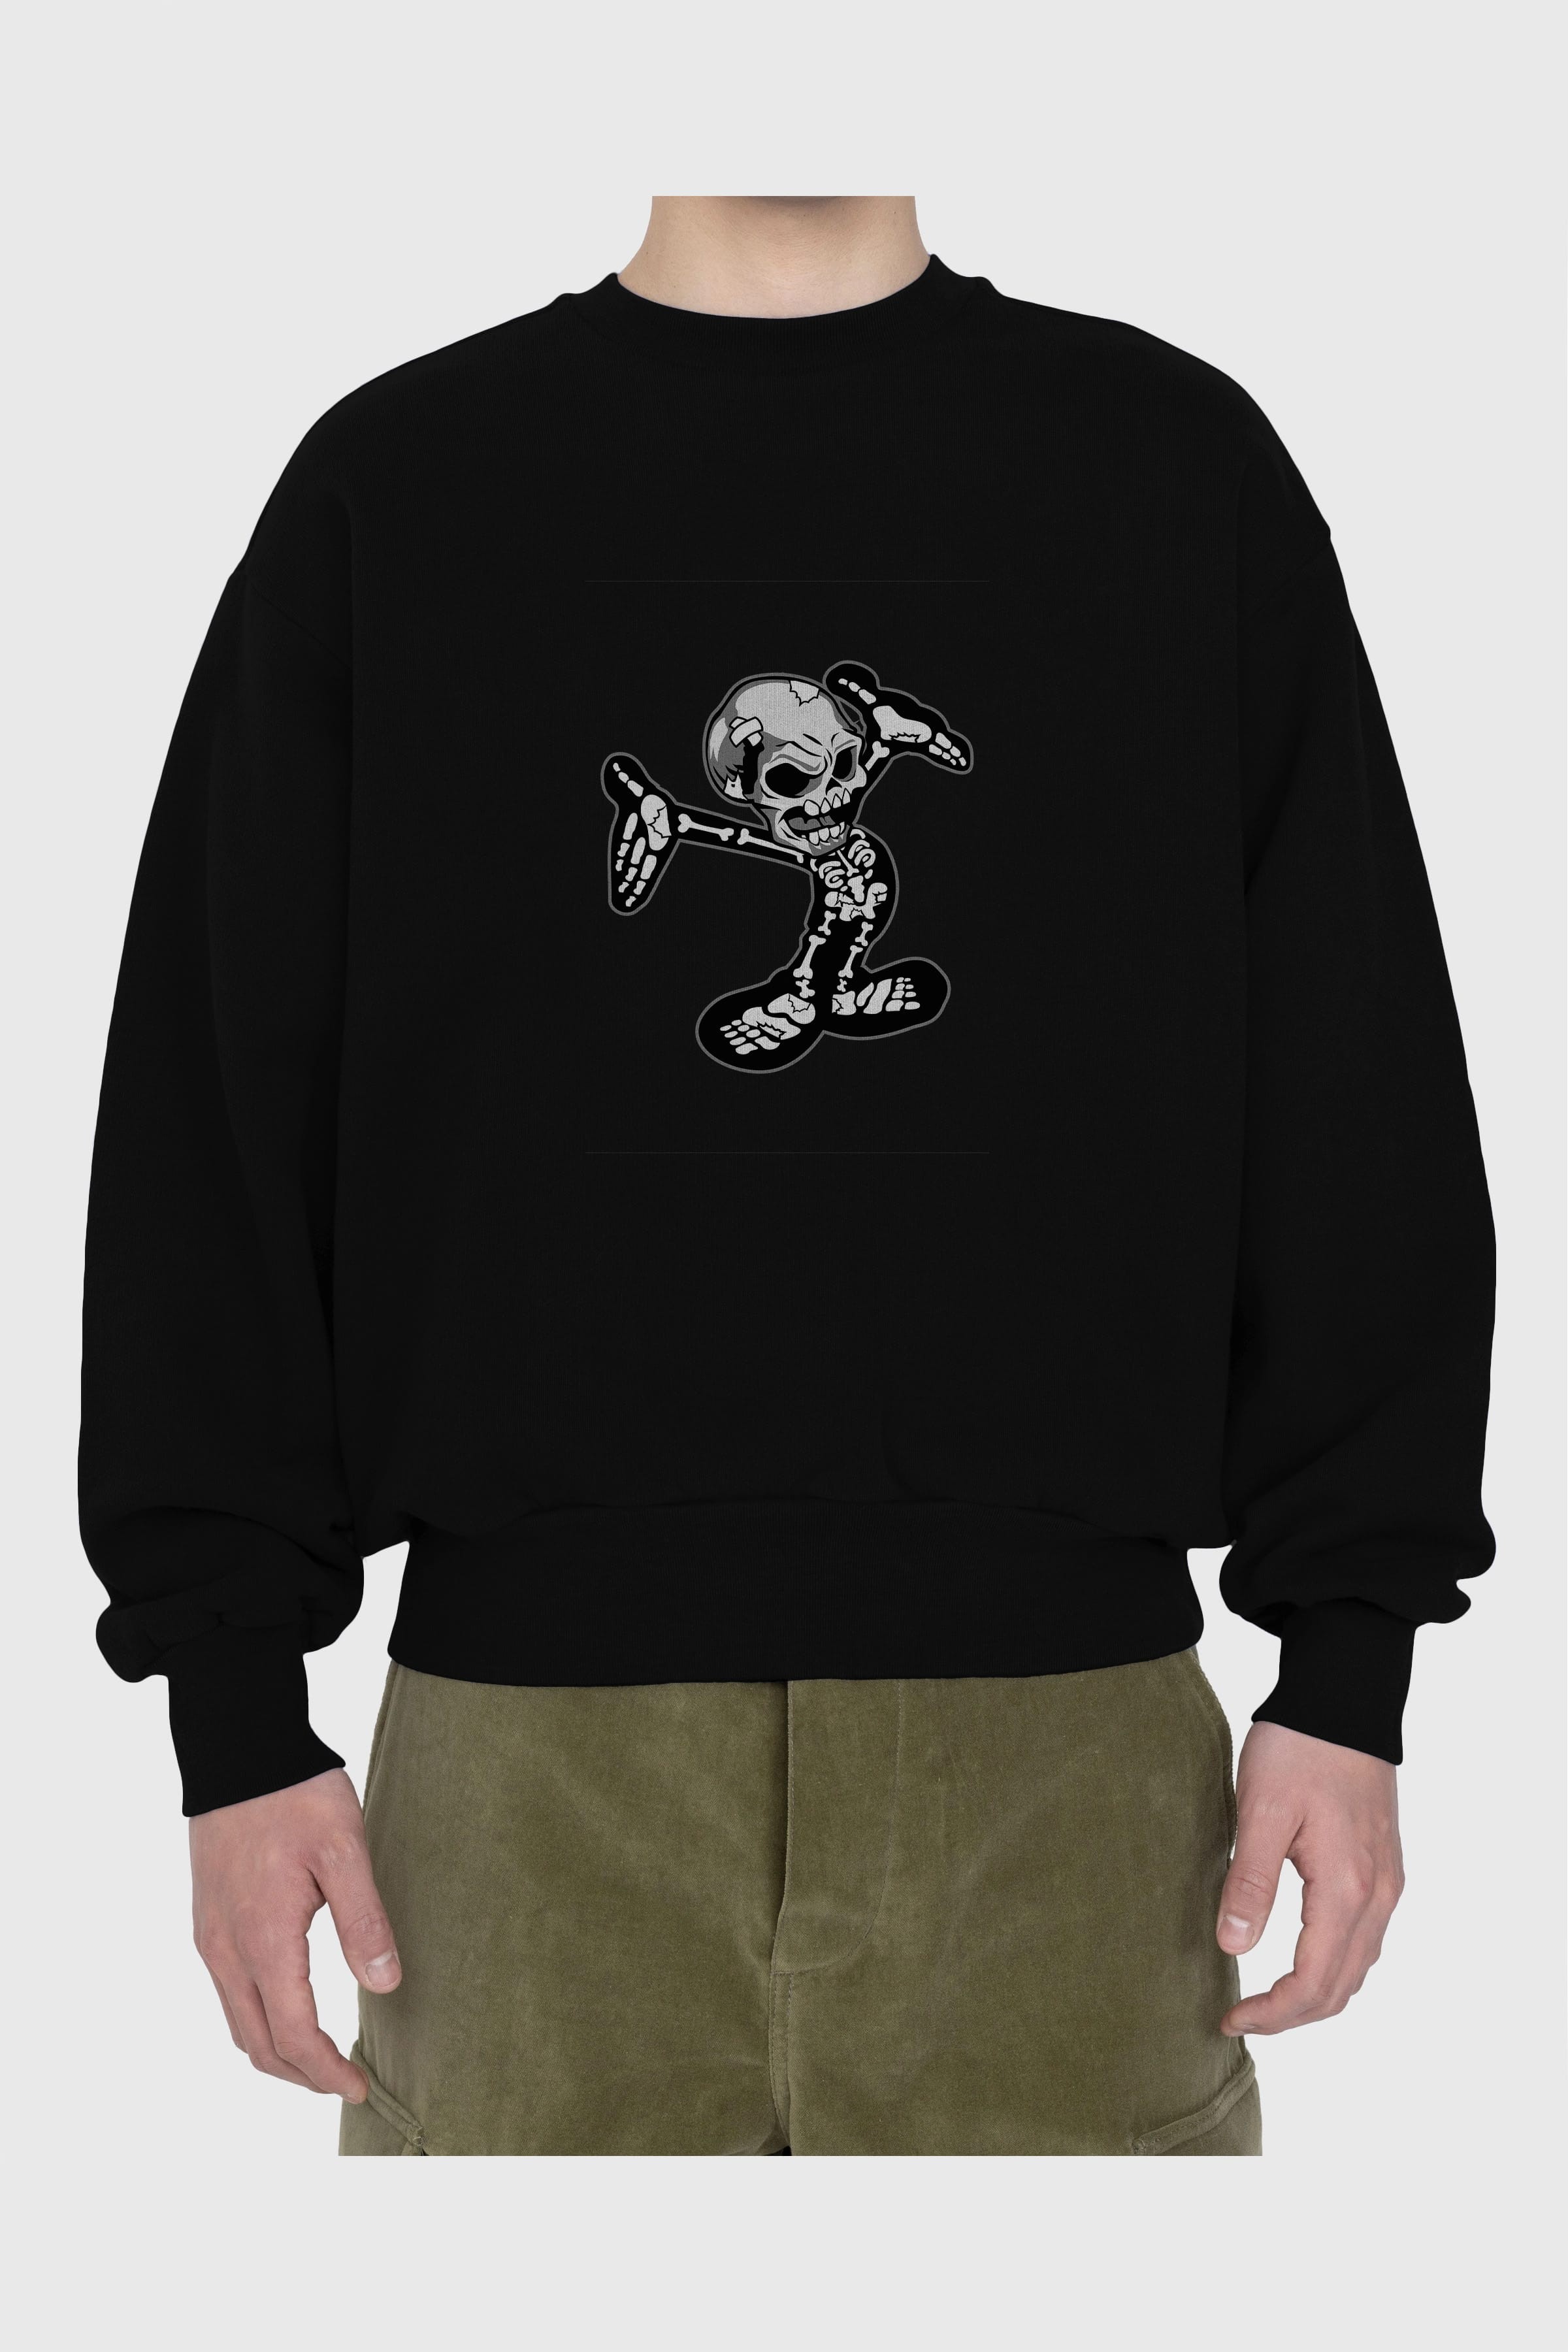 Skull Skeleton Ön Baskılı Oversize Sweatshirt Erkek Kadın Unisex